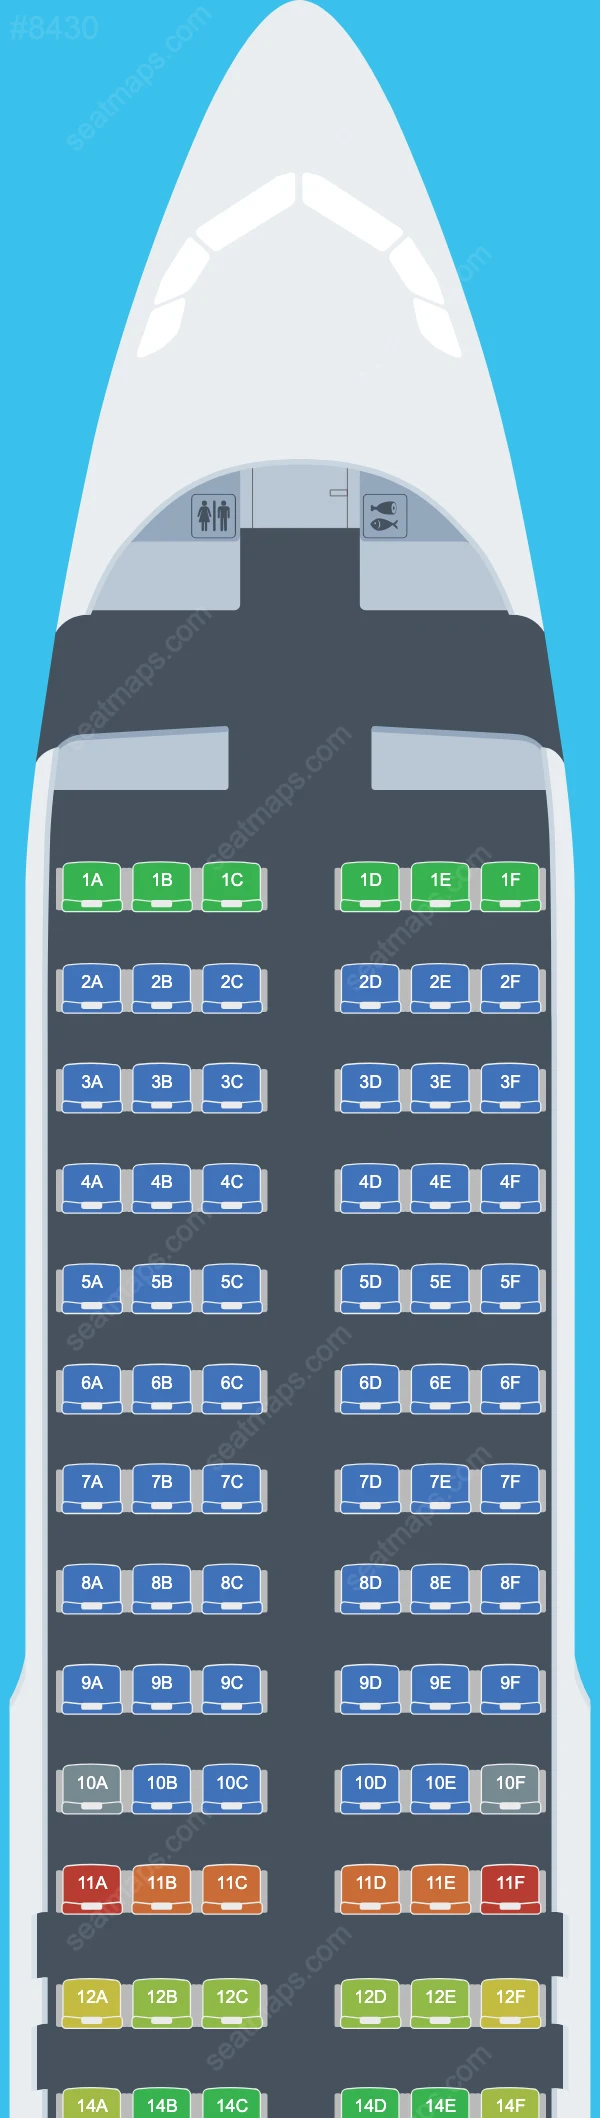 Allegiant Air Airbus A320 Seat Maps A320-200 V.1